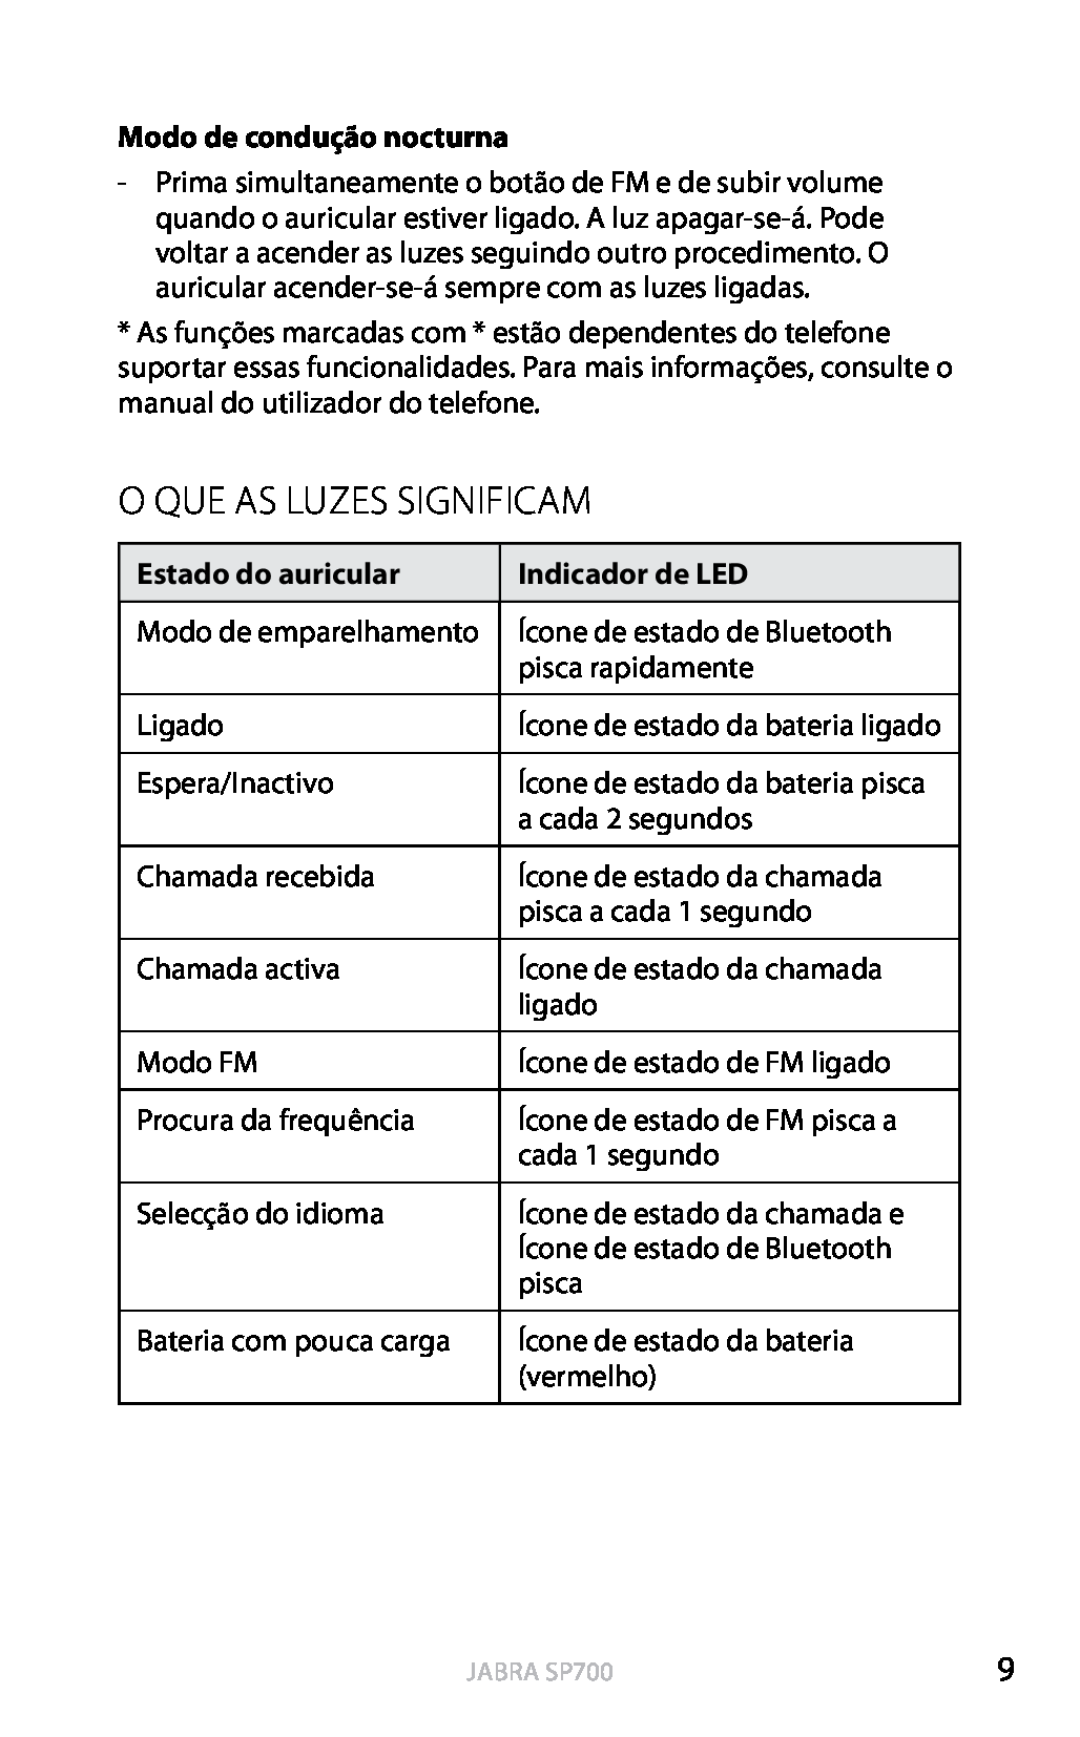 Jabra SP700 O Que As Luzes Significam, Modo de condução nocturna, Estado do auricular, Indicador de LED, Português 